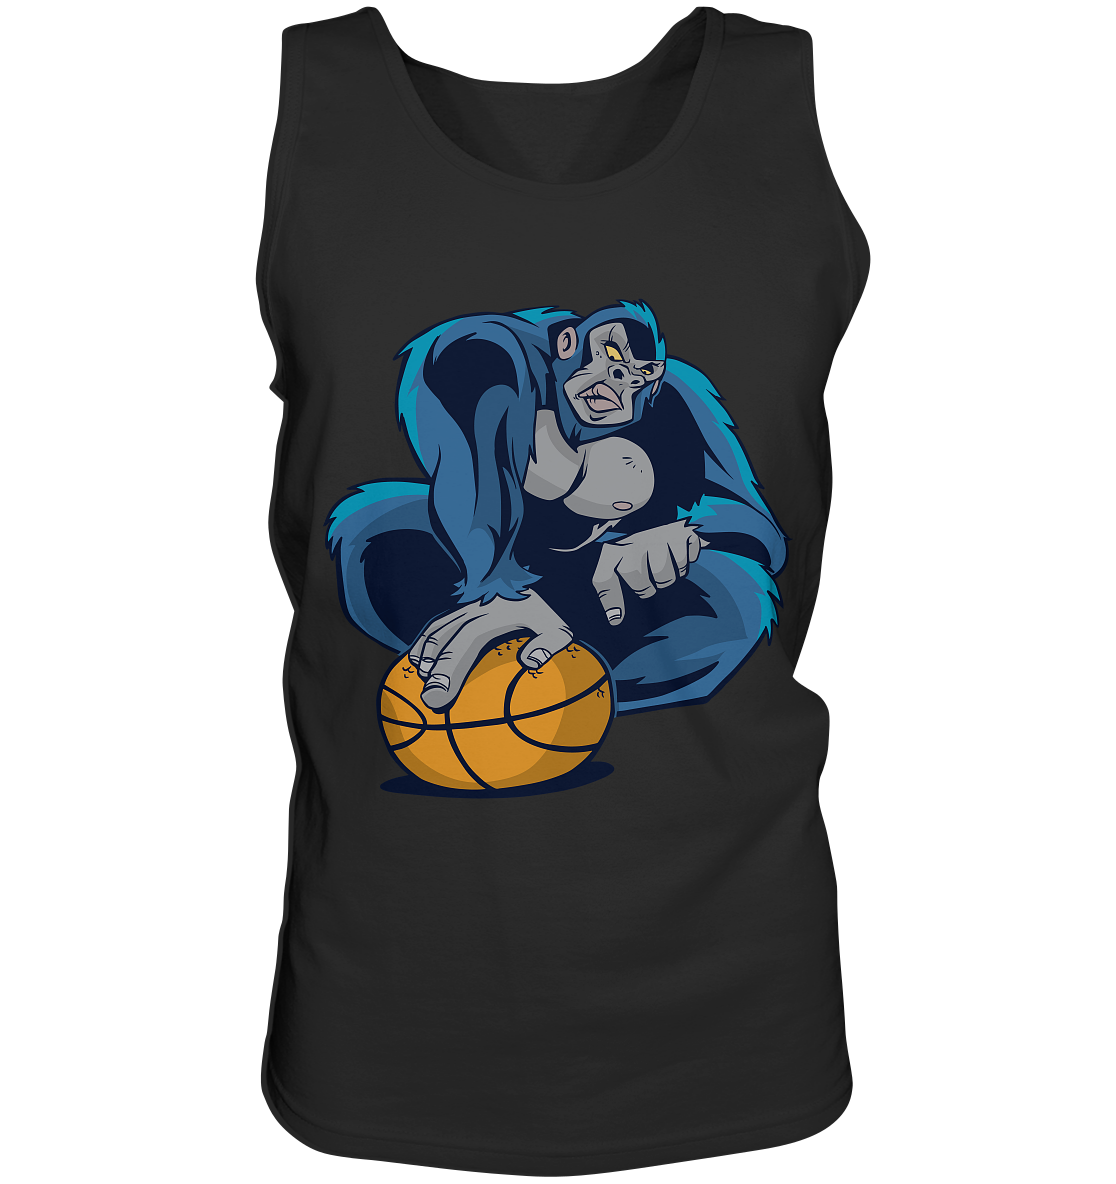 Basketball Gorilla - Tank-Top